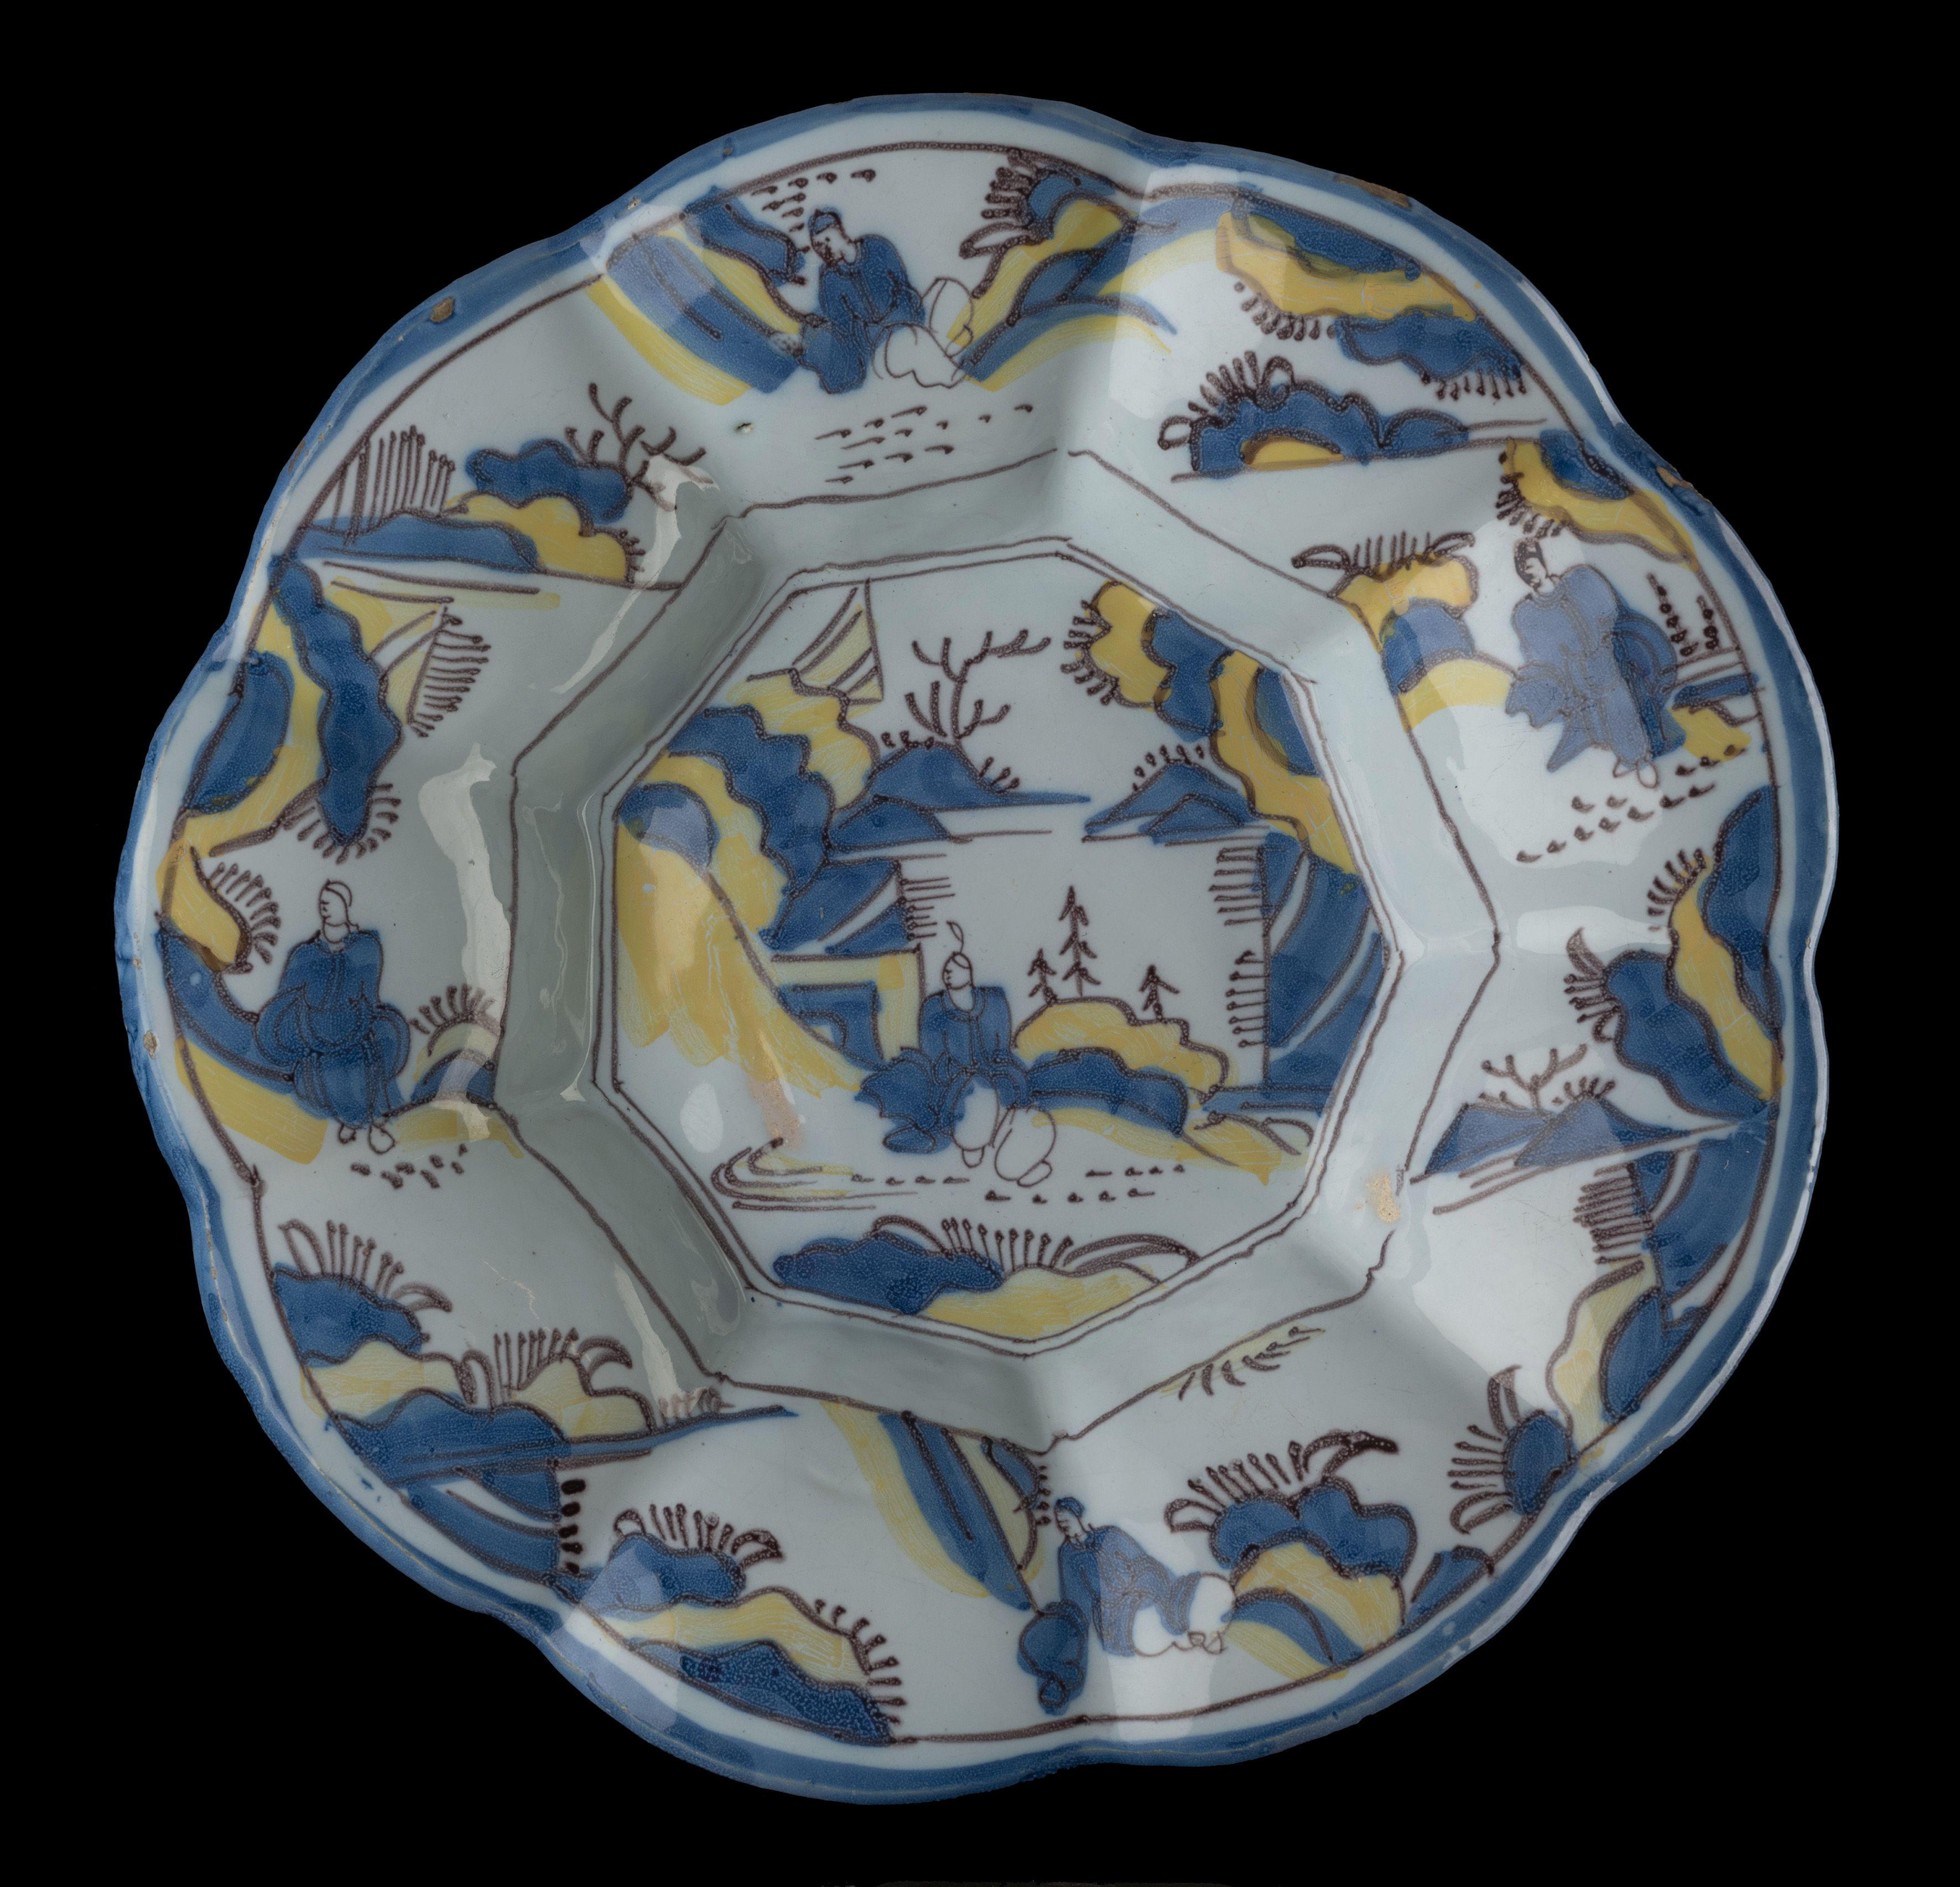 Chinoiserie-Schale mit Lappen in Blau, Gelb und Violett. Delft, 1680-1690
Abmessungen: Durchmesser 34 cm / 13.58 in. 

Die gelappte Schale besteht aus neun breiten Lappen, die sich um ein neunfaches Zentrum gruppieren, und ist in Blau und Gelb